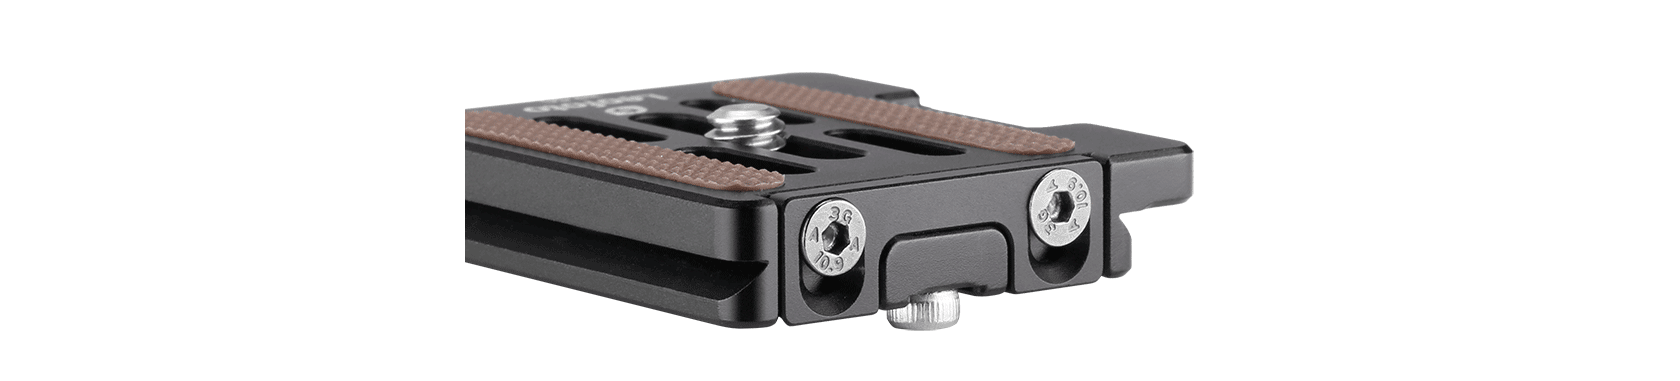 Leofoto NP-50 (50mm) / NP-60 (60mm) Universal Plate ARCA Compatible